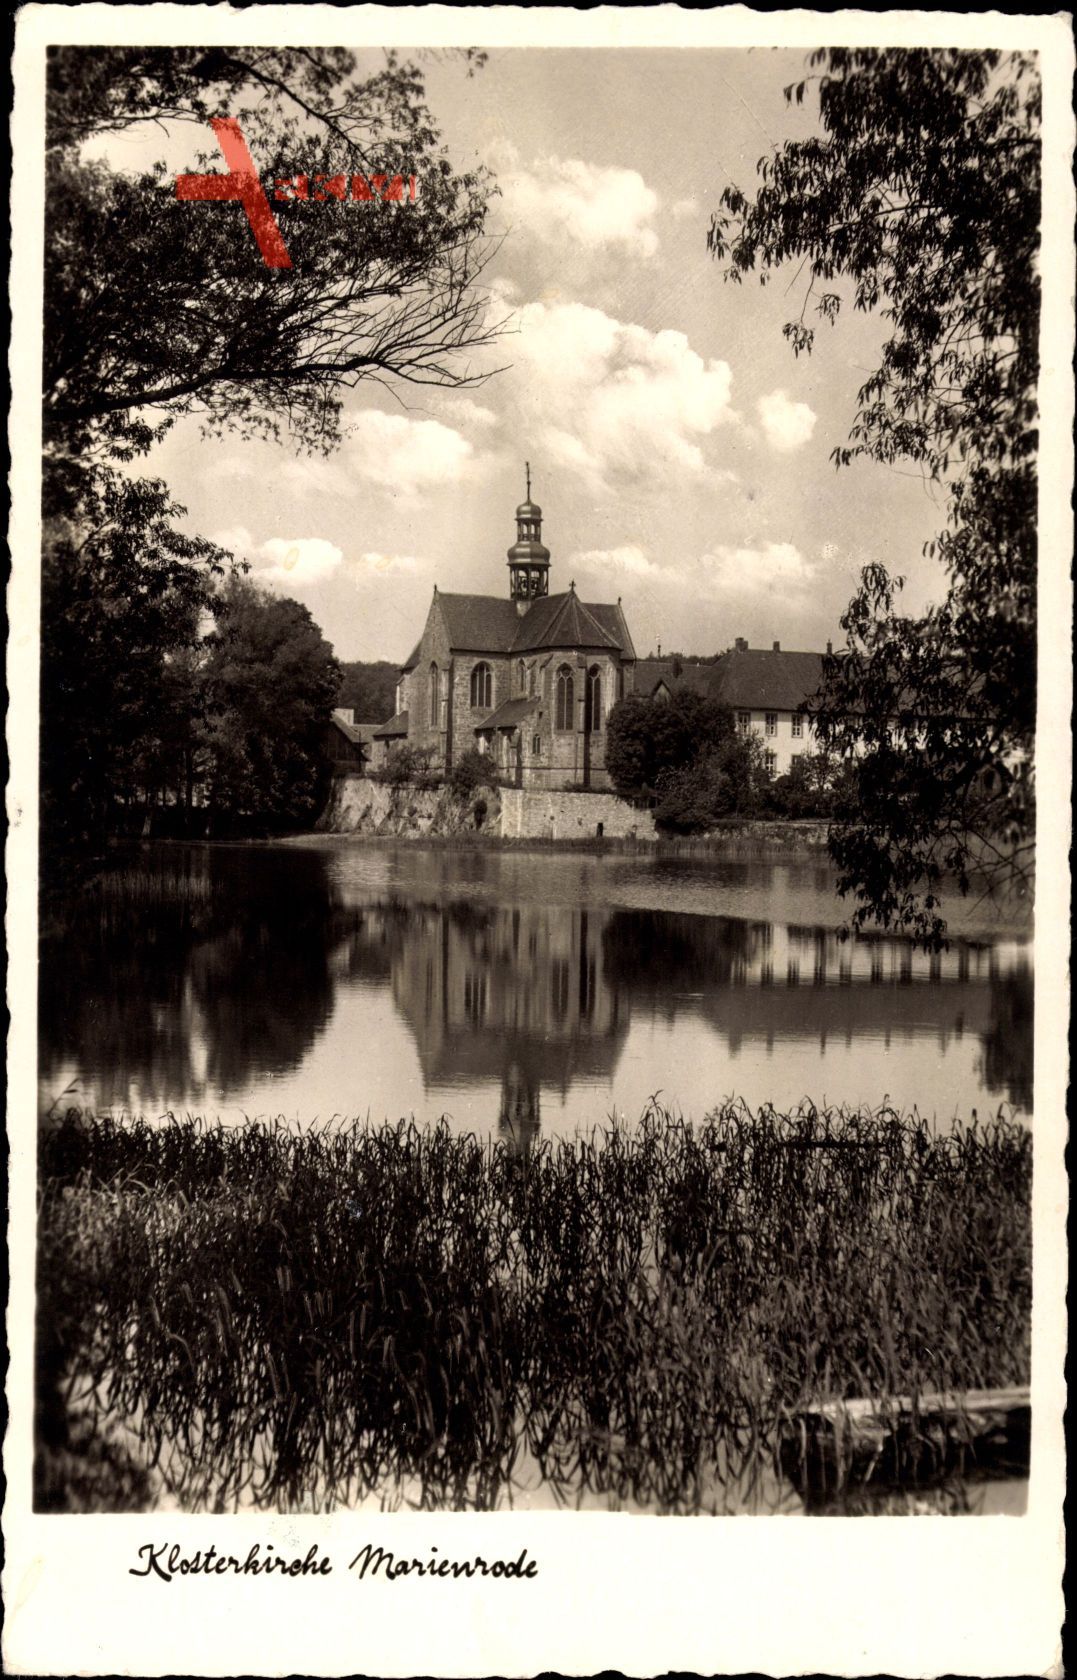 Hildesheim in Niedersachsen, Blick auf die Klosterkirche Marienrode